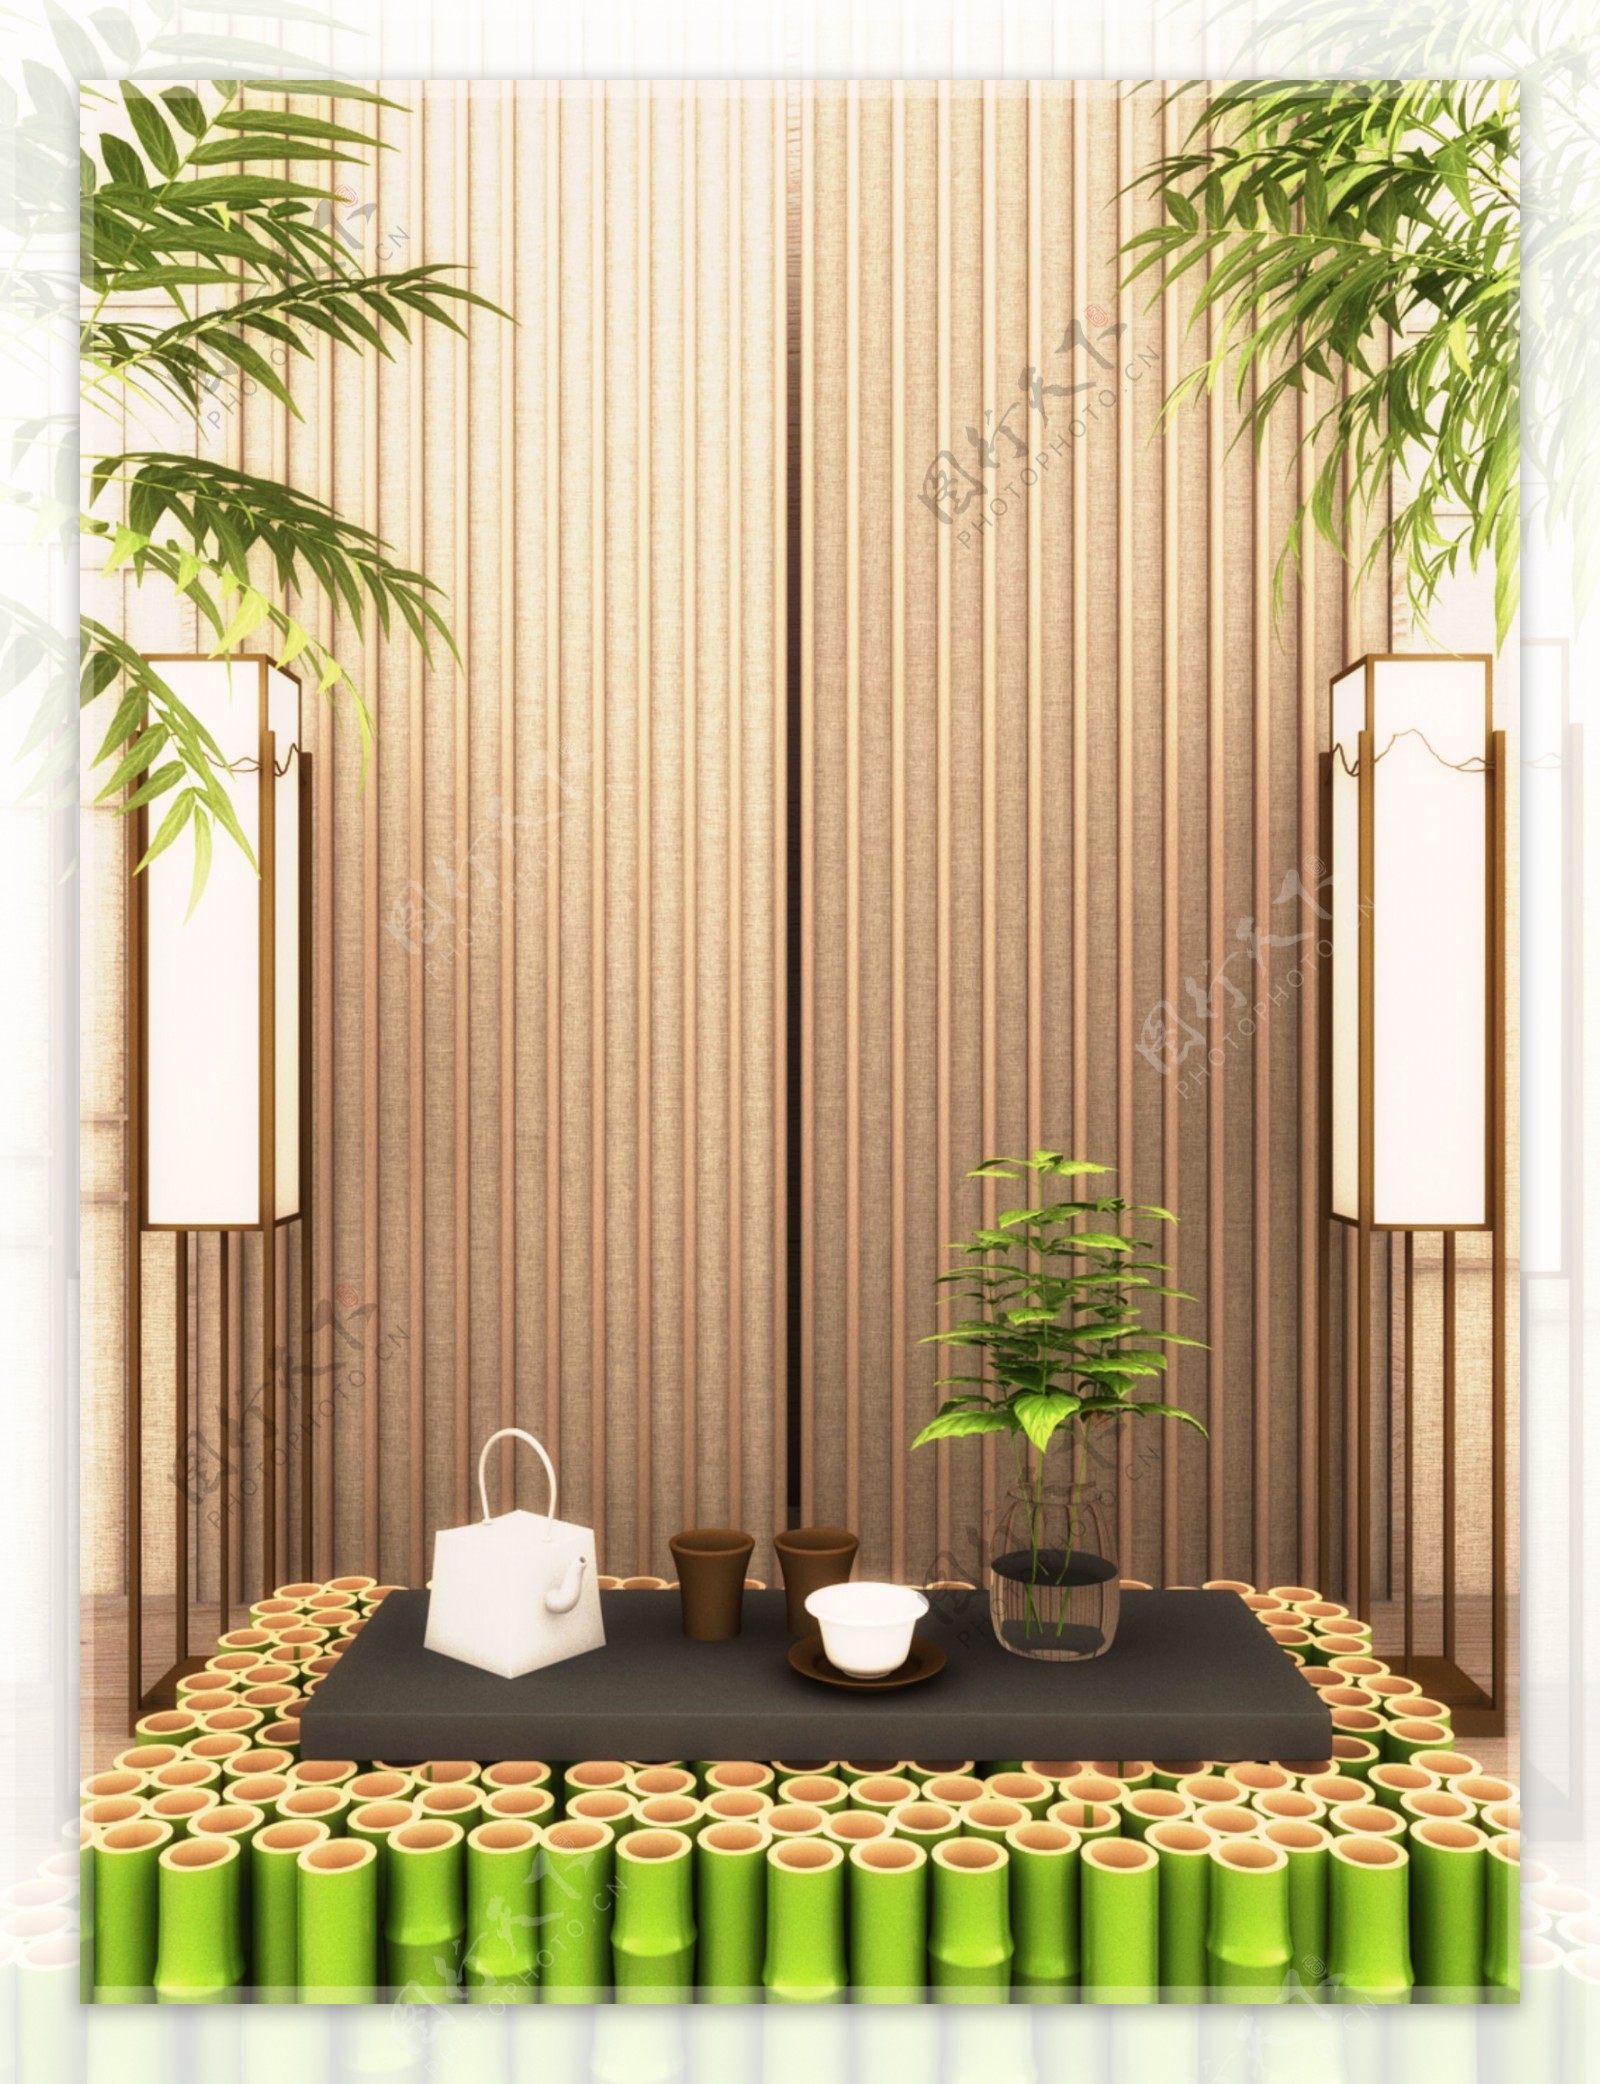 原创写实风格自然竹子茶道文化创意3D背景